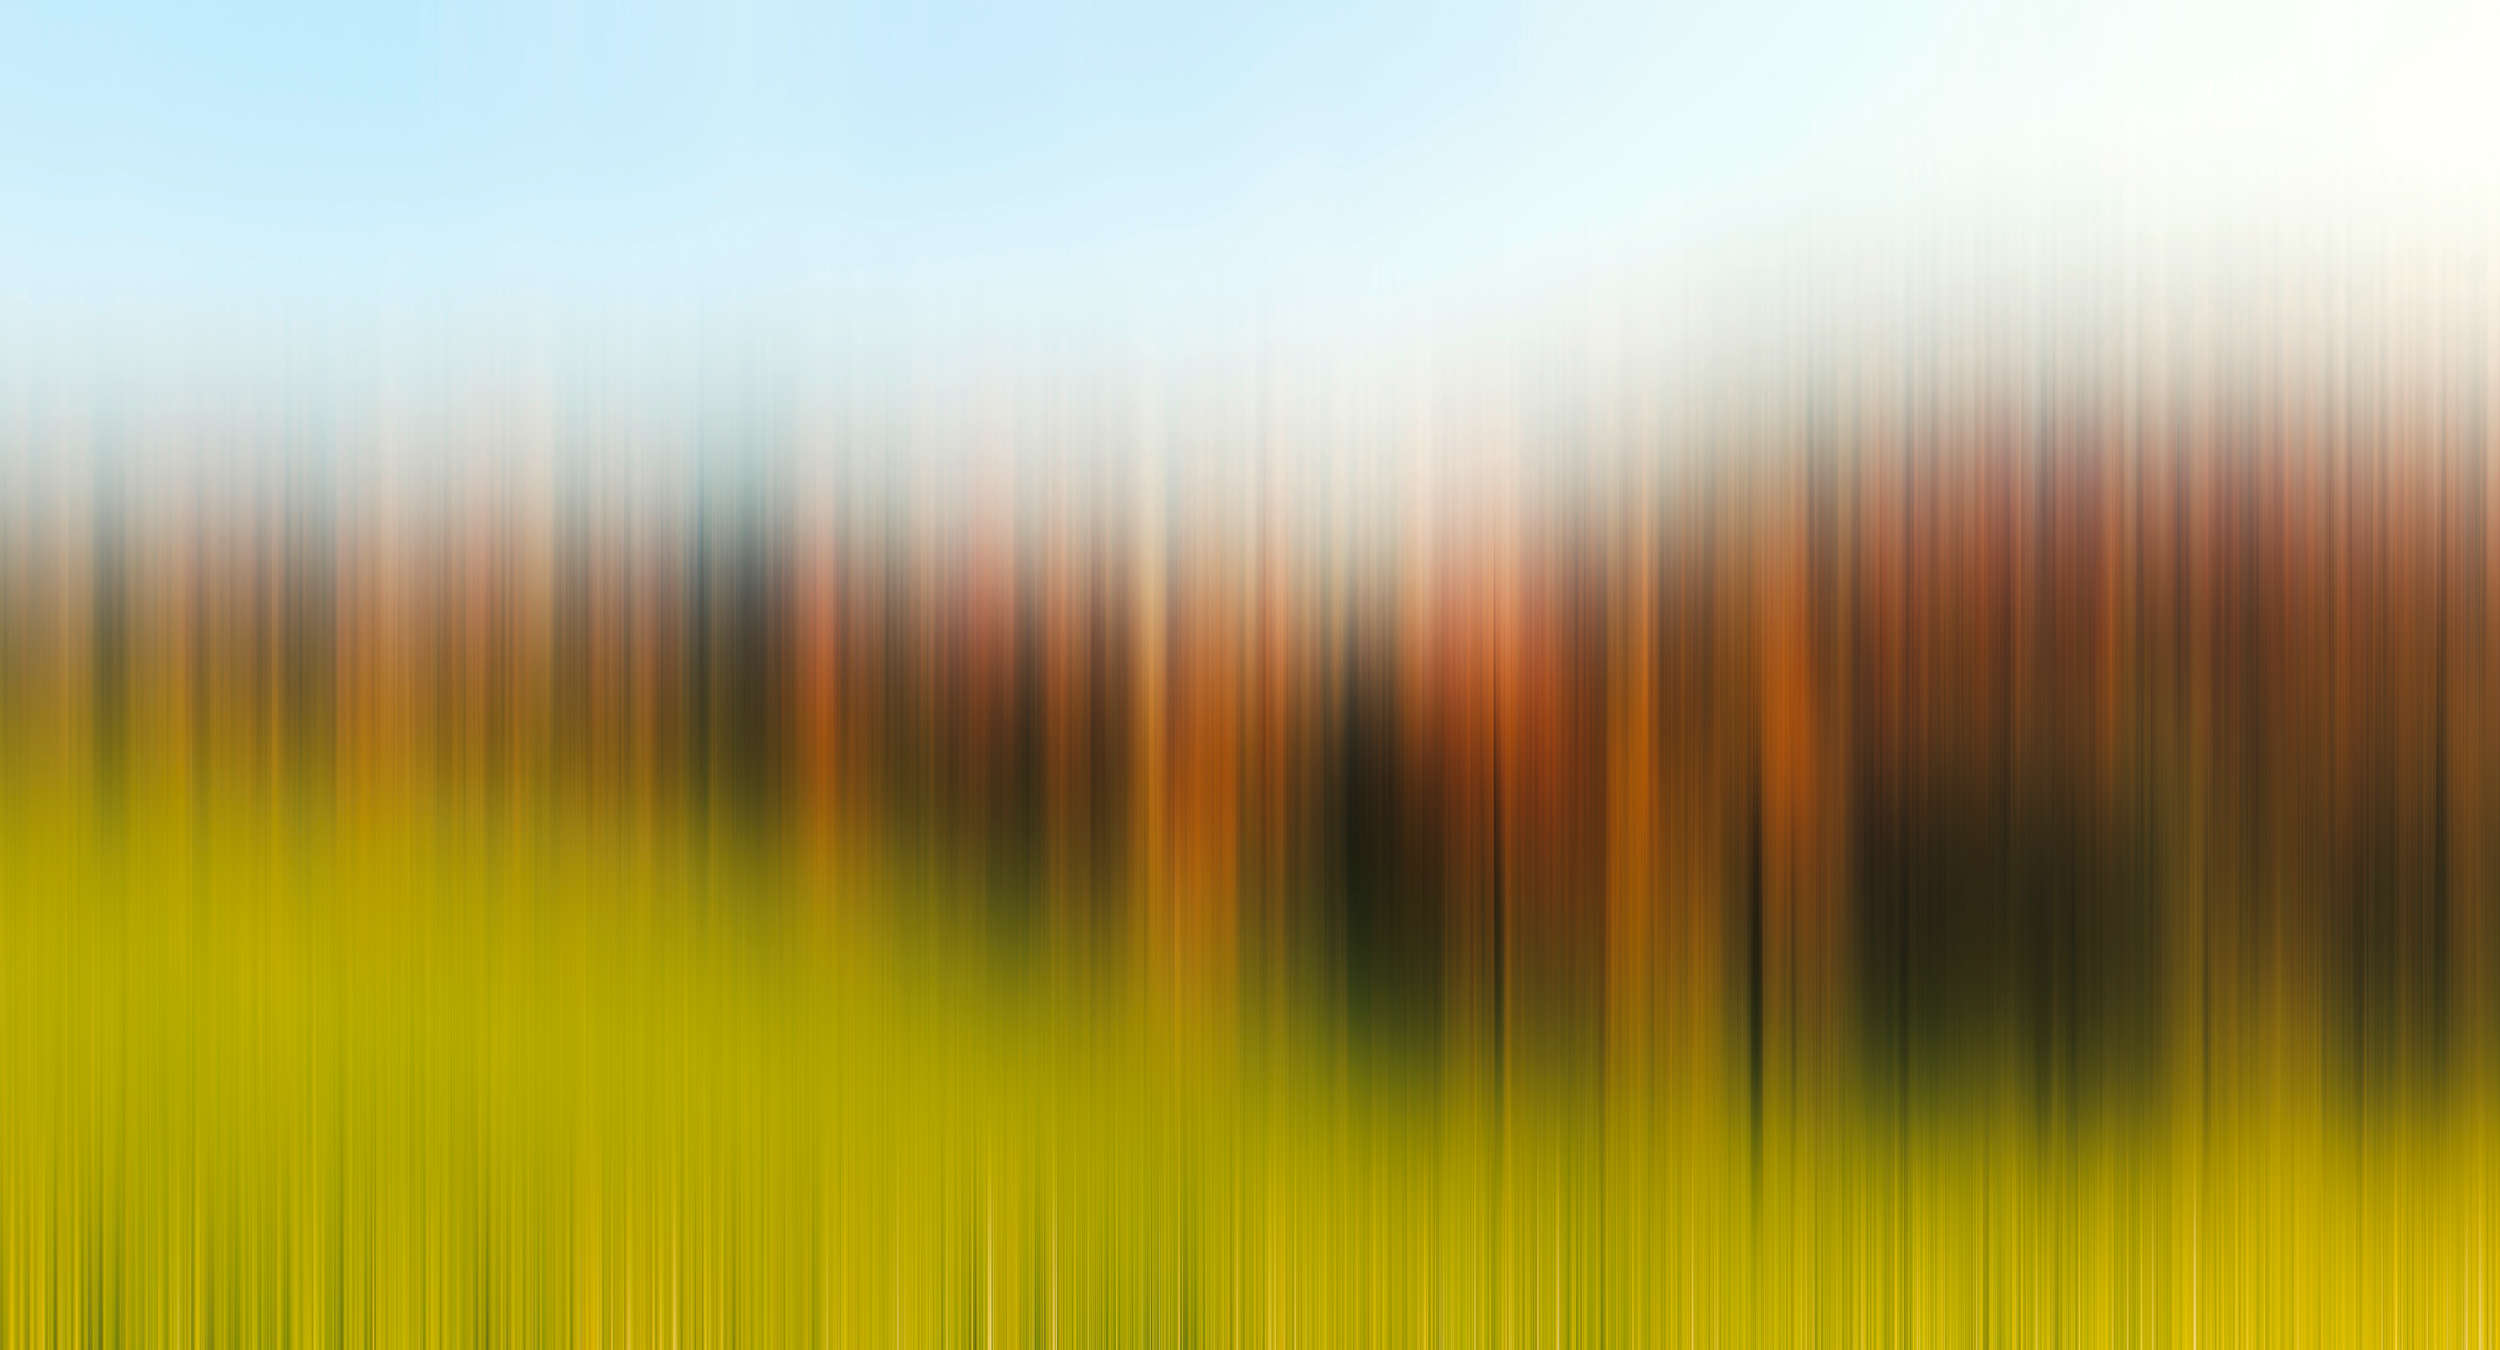             Fototapete abstrakter Kunststil mit leuchtenden Farben – Grün, Orange, Blau
        